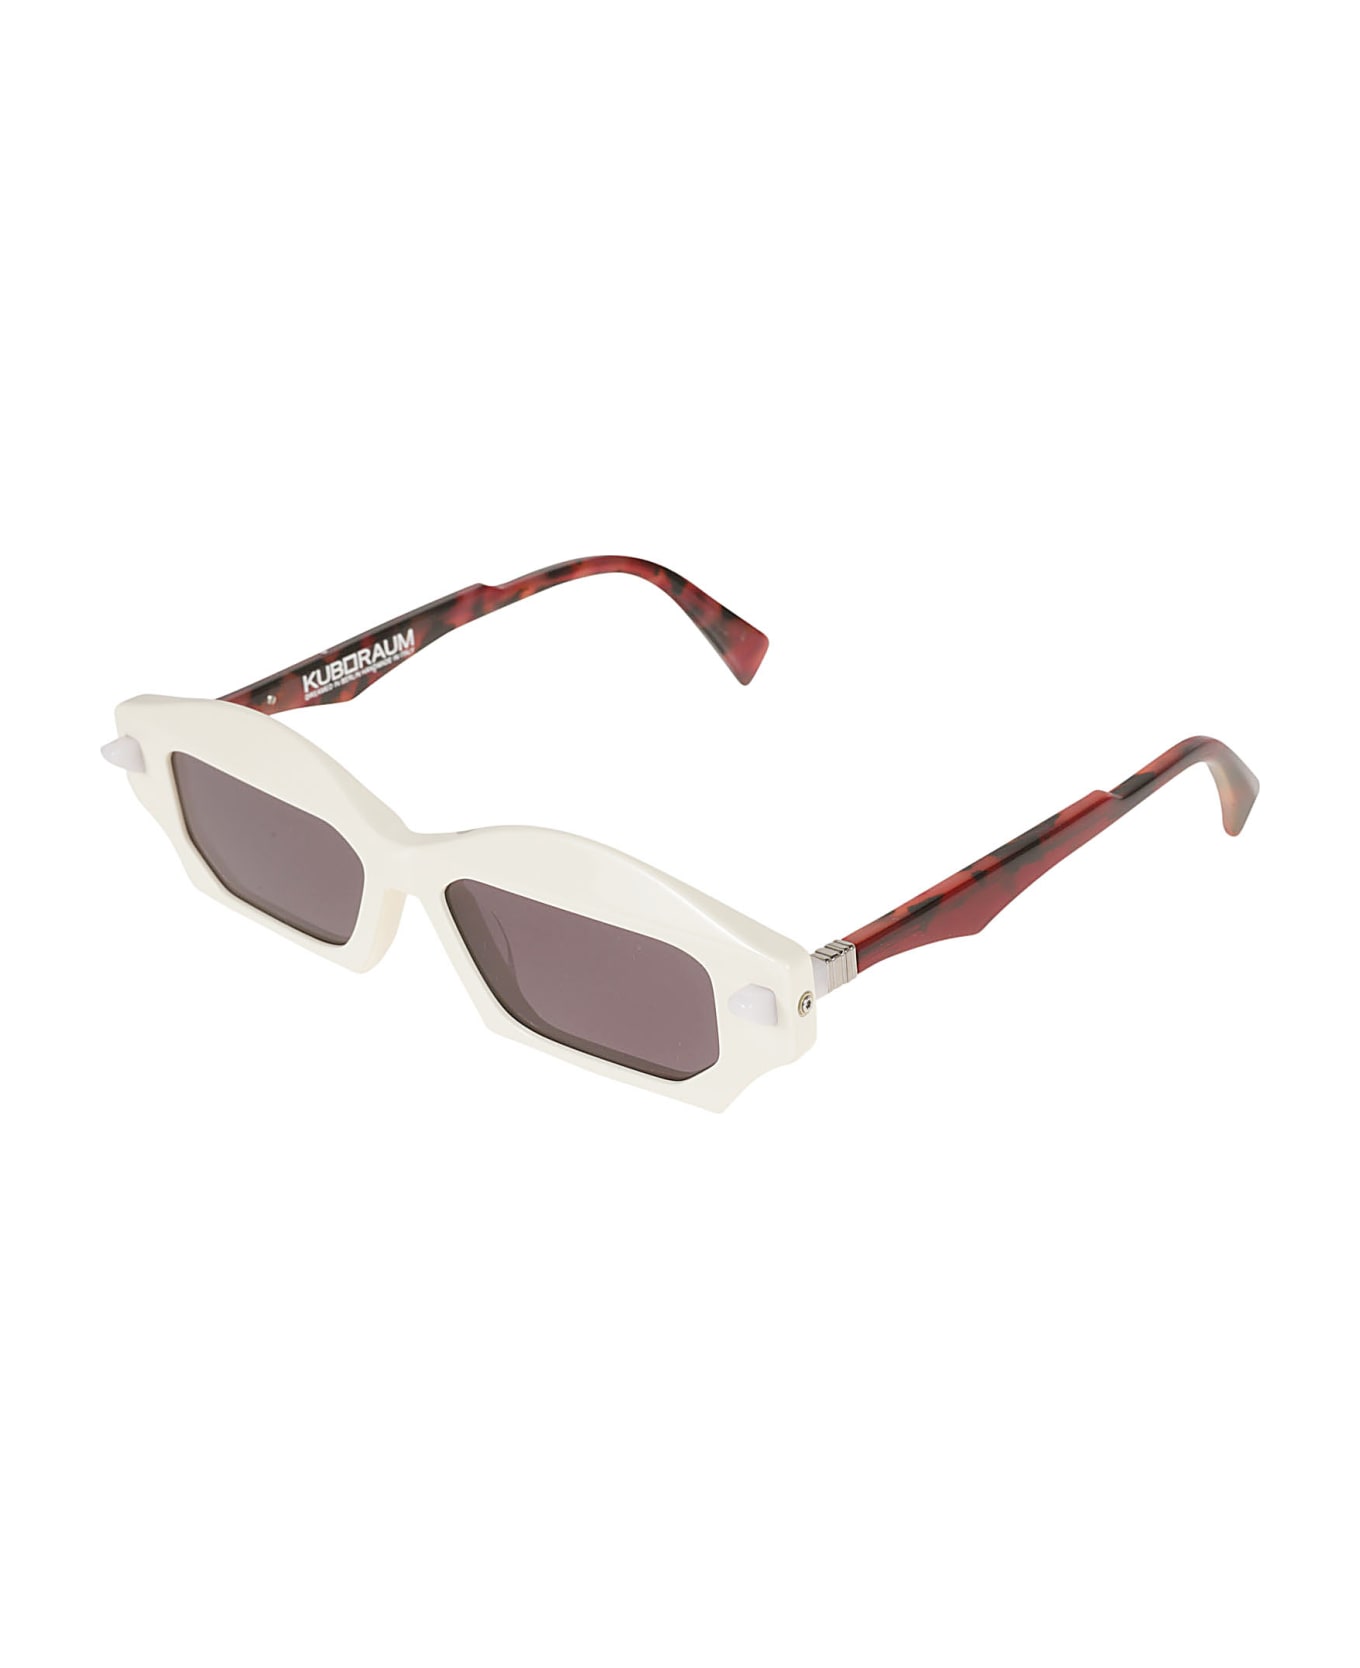 Kuboraum Square Thick Sunglasses - Grey/Black 